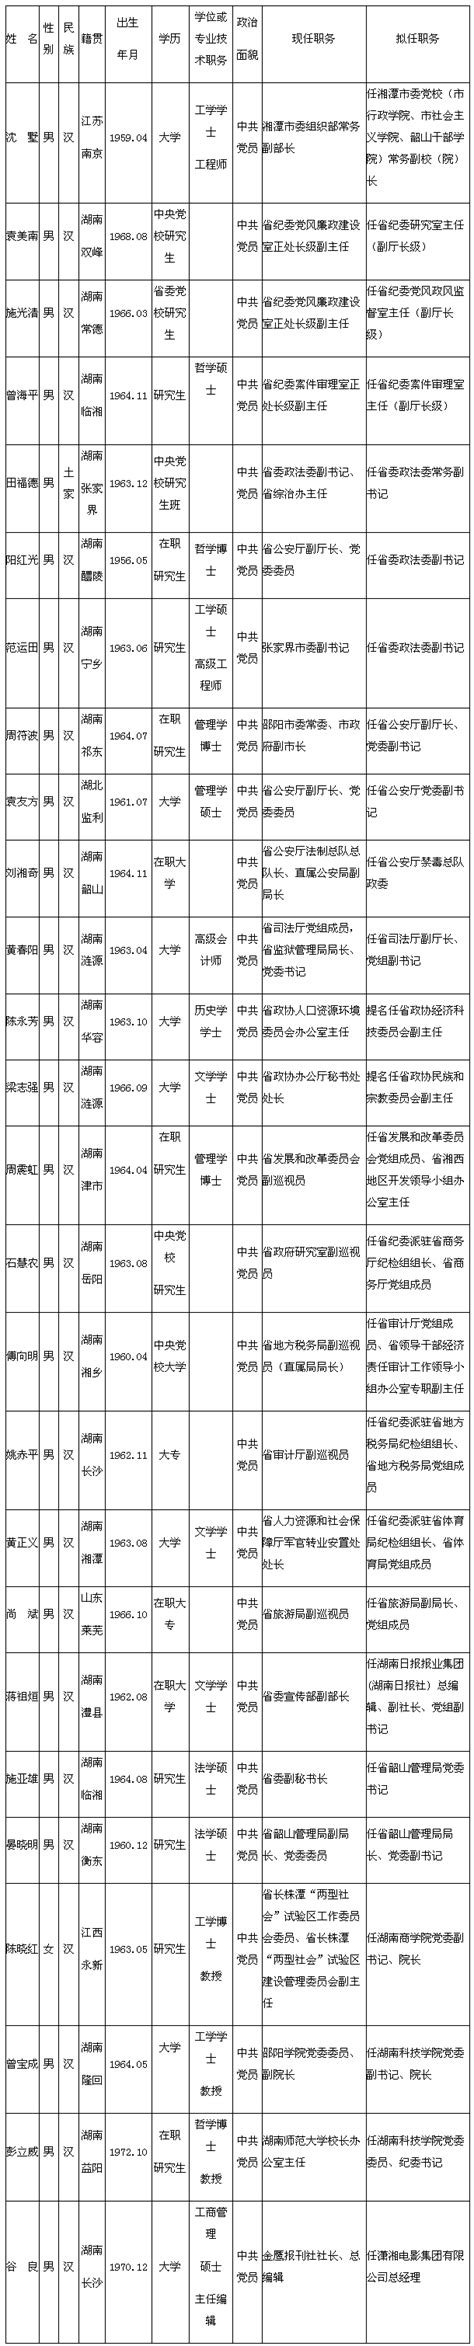 湖南26名省委管理干部任前公示(名单)_湖南频道_凤凰网